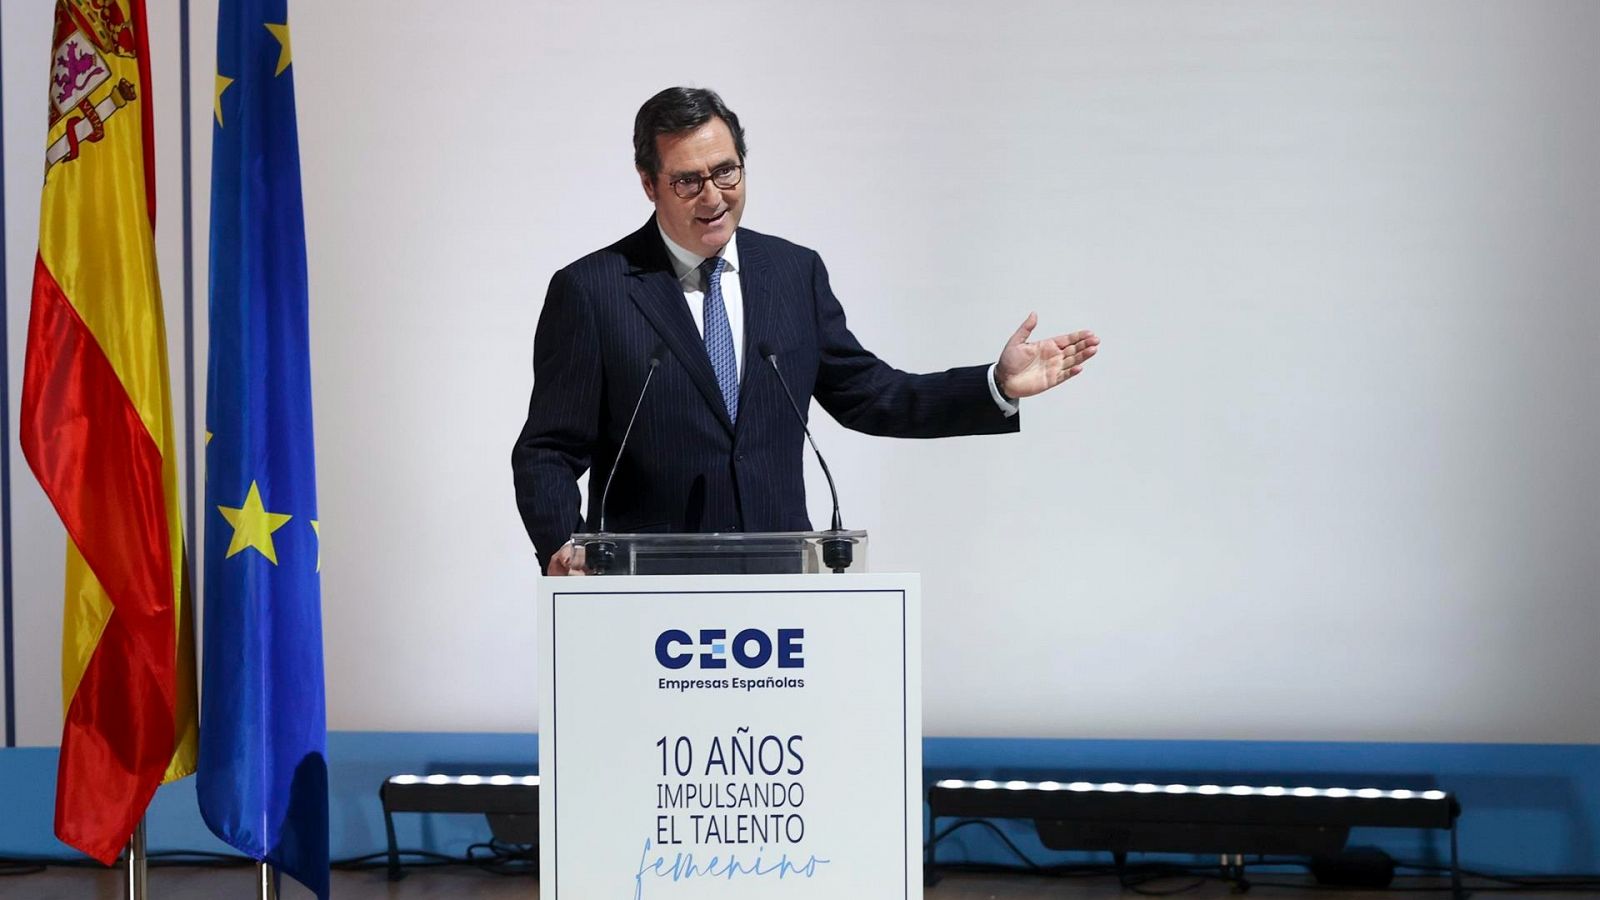 CEOE: La Junta directiva propone a Garamendi un contrato como asalariado